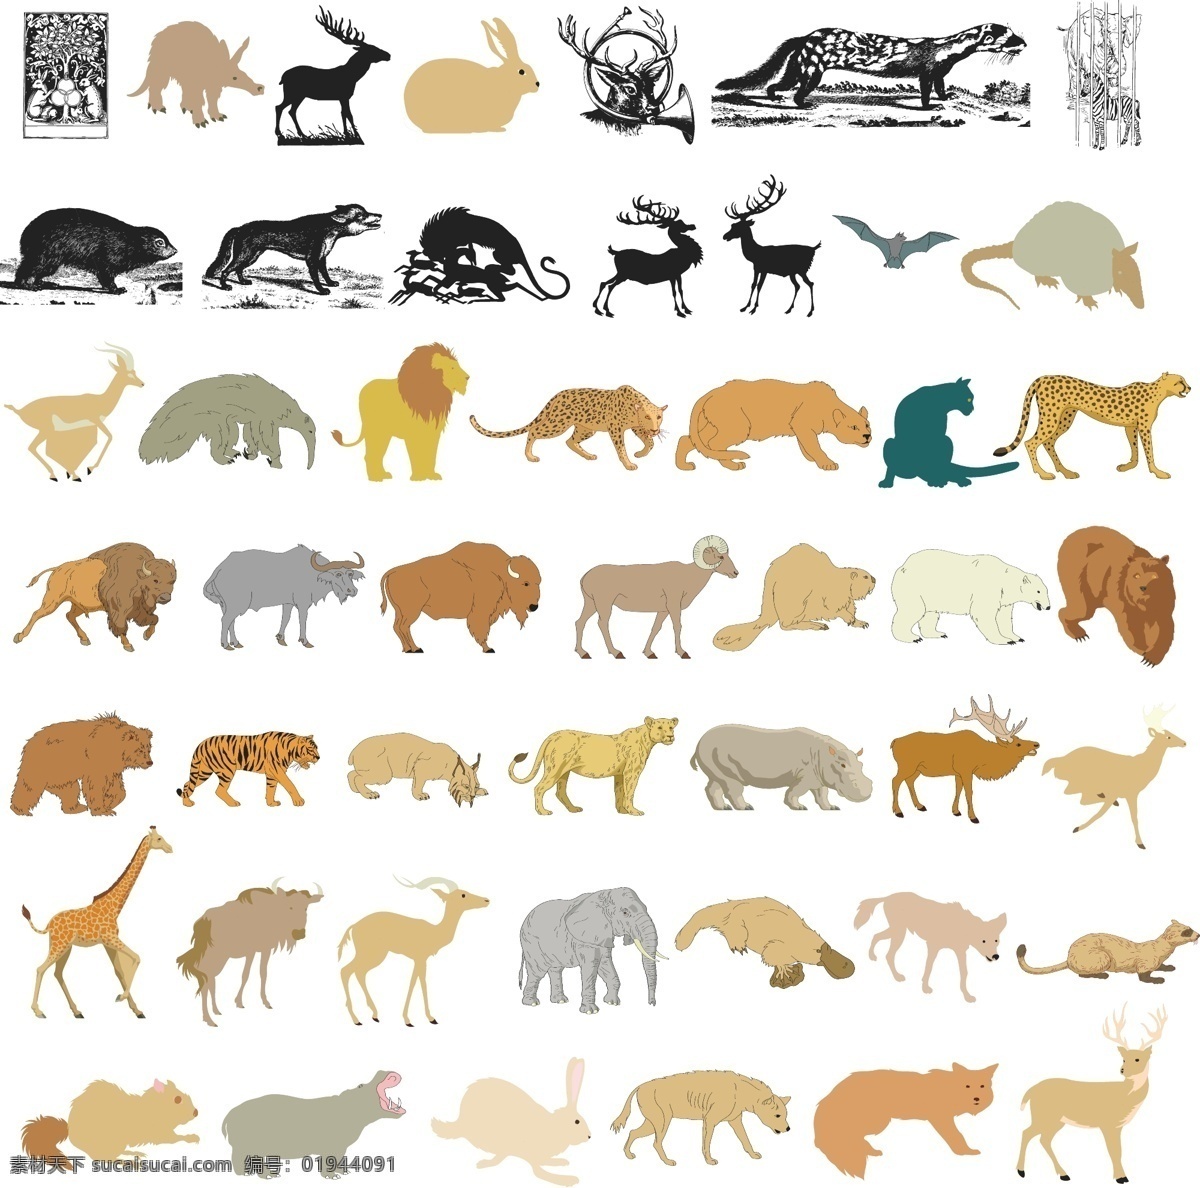 豹子 老虎 野生动物 大象 长颈鹿 食蚁兽 牦牛 狐狸 梅花鹿 动物图形元素 生物世界 矢量